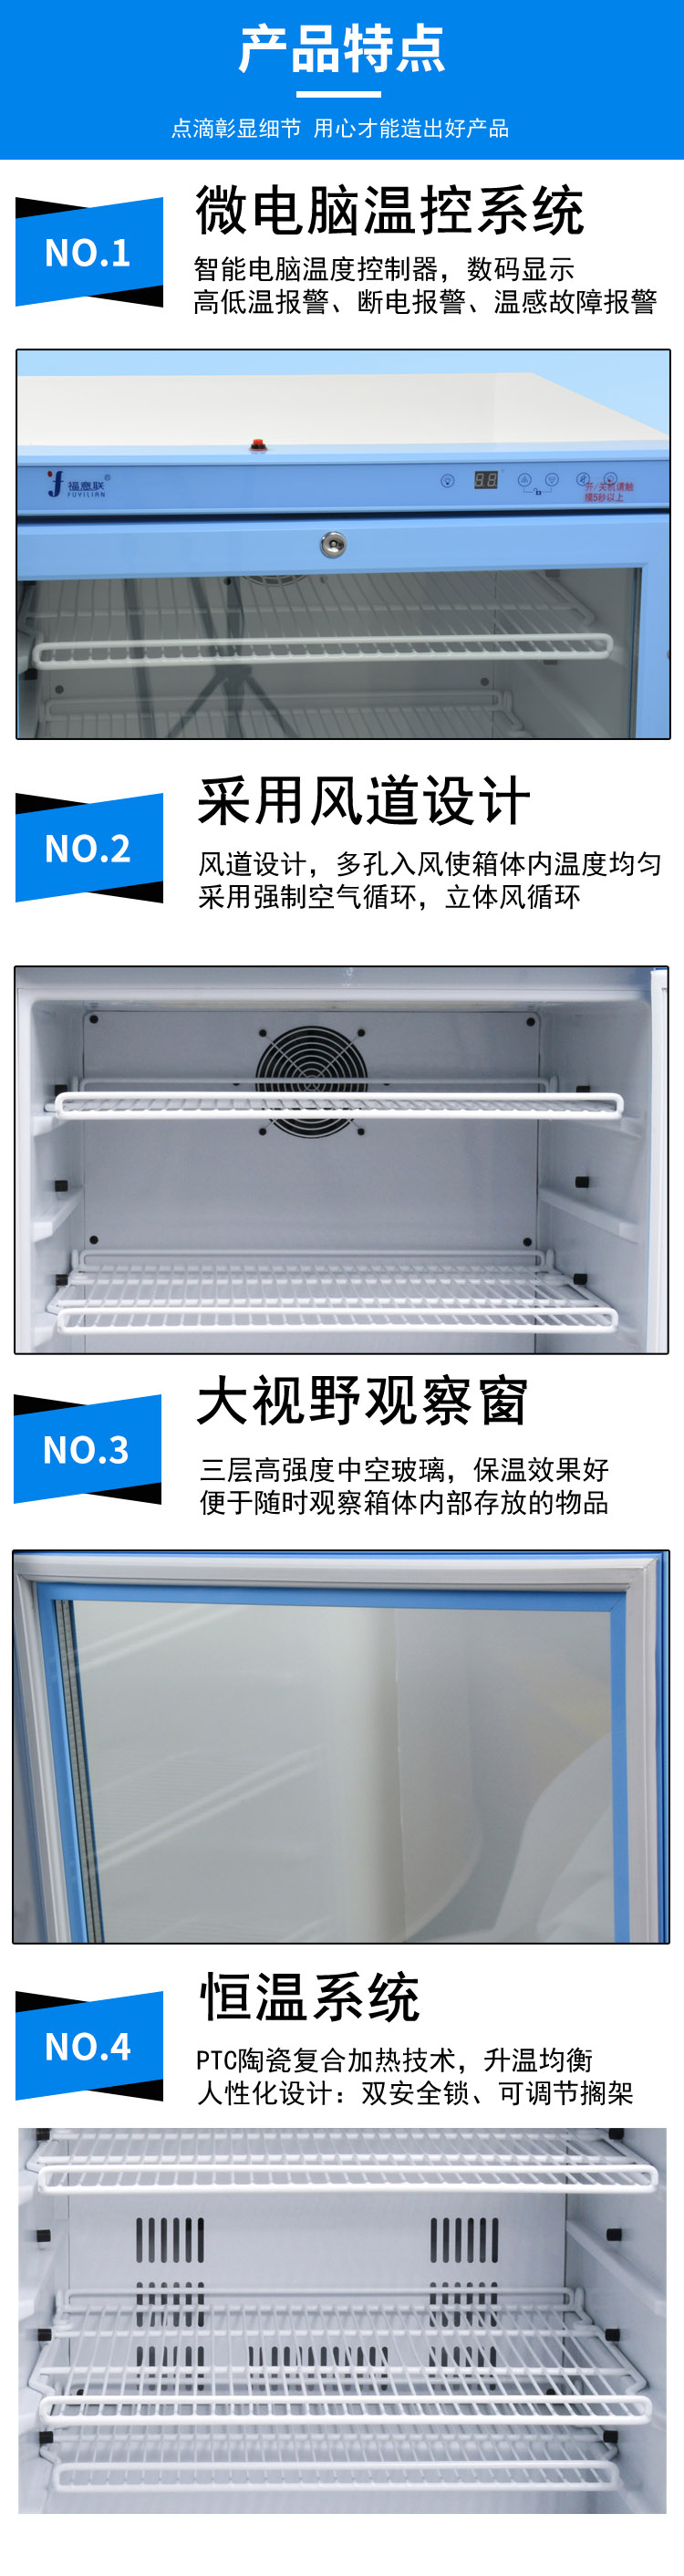 福意联水质样品冷藏柜(采样冰箱)